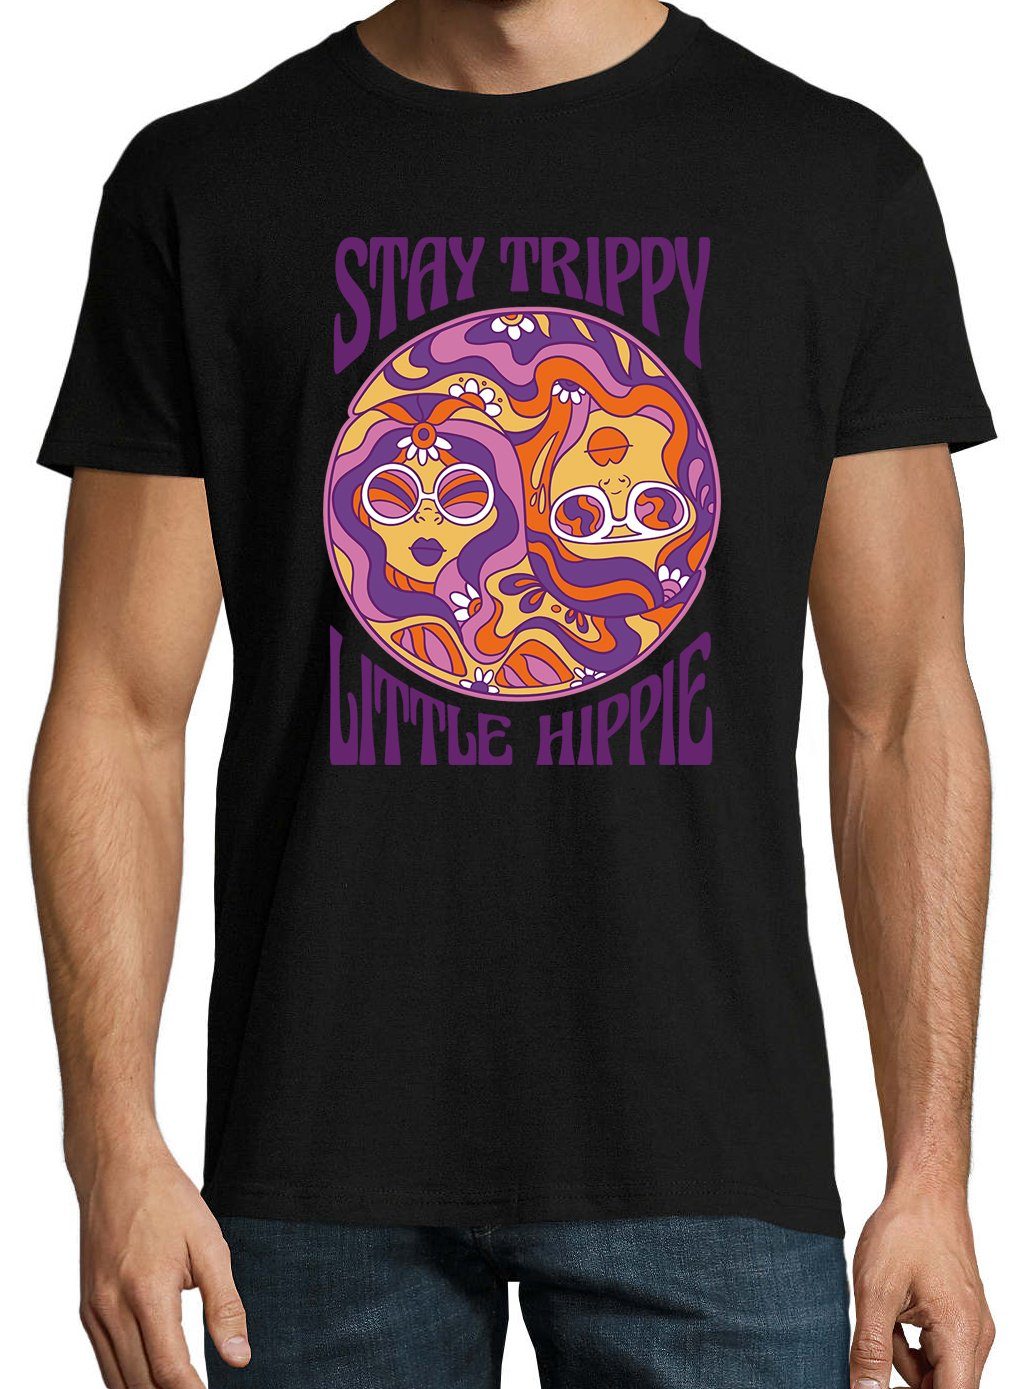 Youth Designz T-Shirt Herren Trippy Little Stay mit Schwarz trendigem Frontprint Shirt Hippie